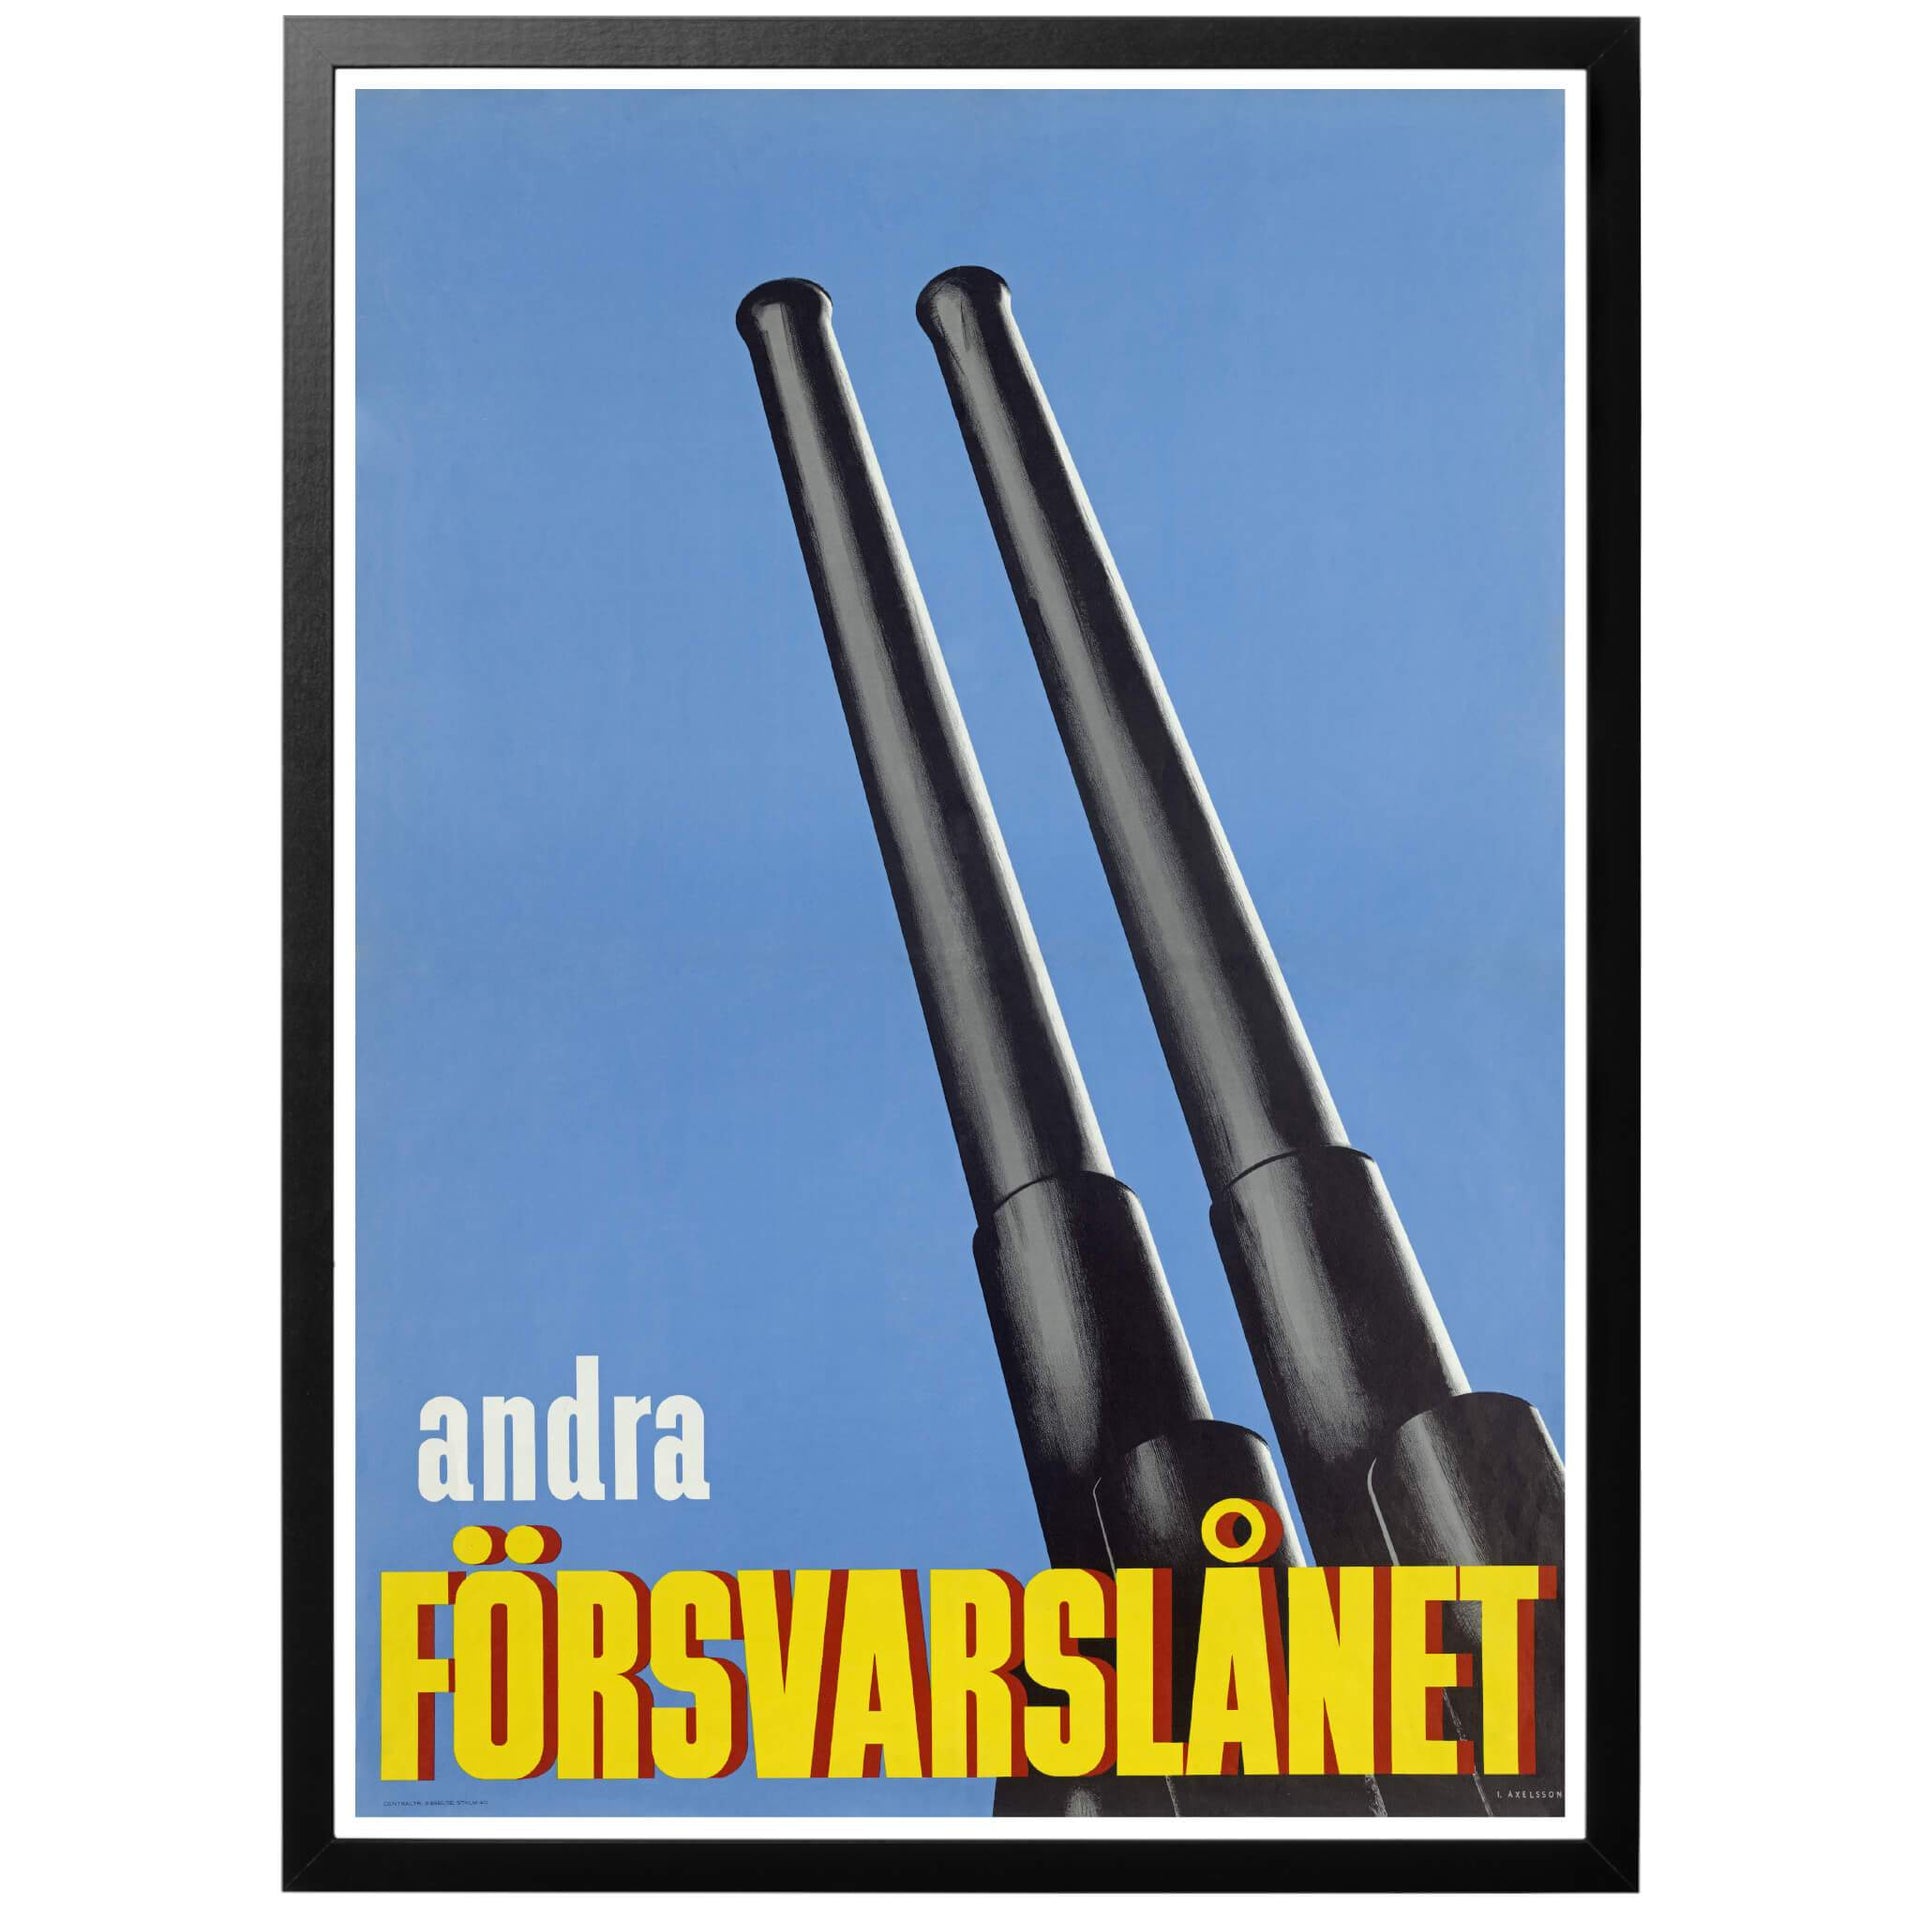 Andra försvarslånet - svensk propaganda WWII